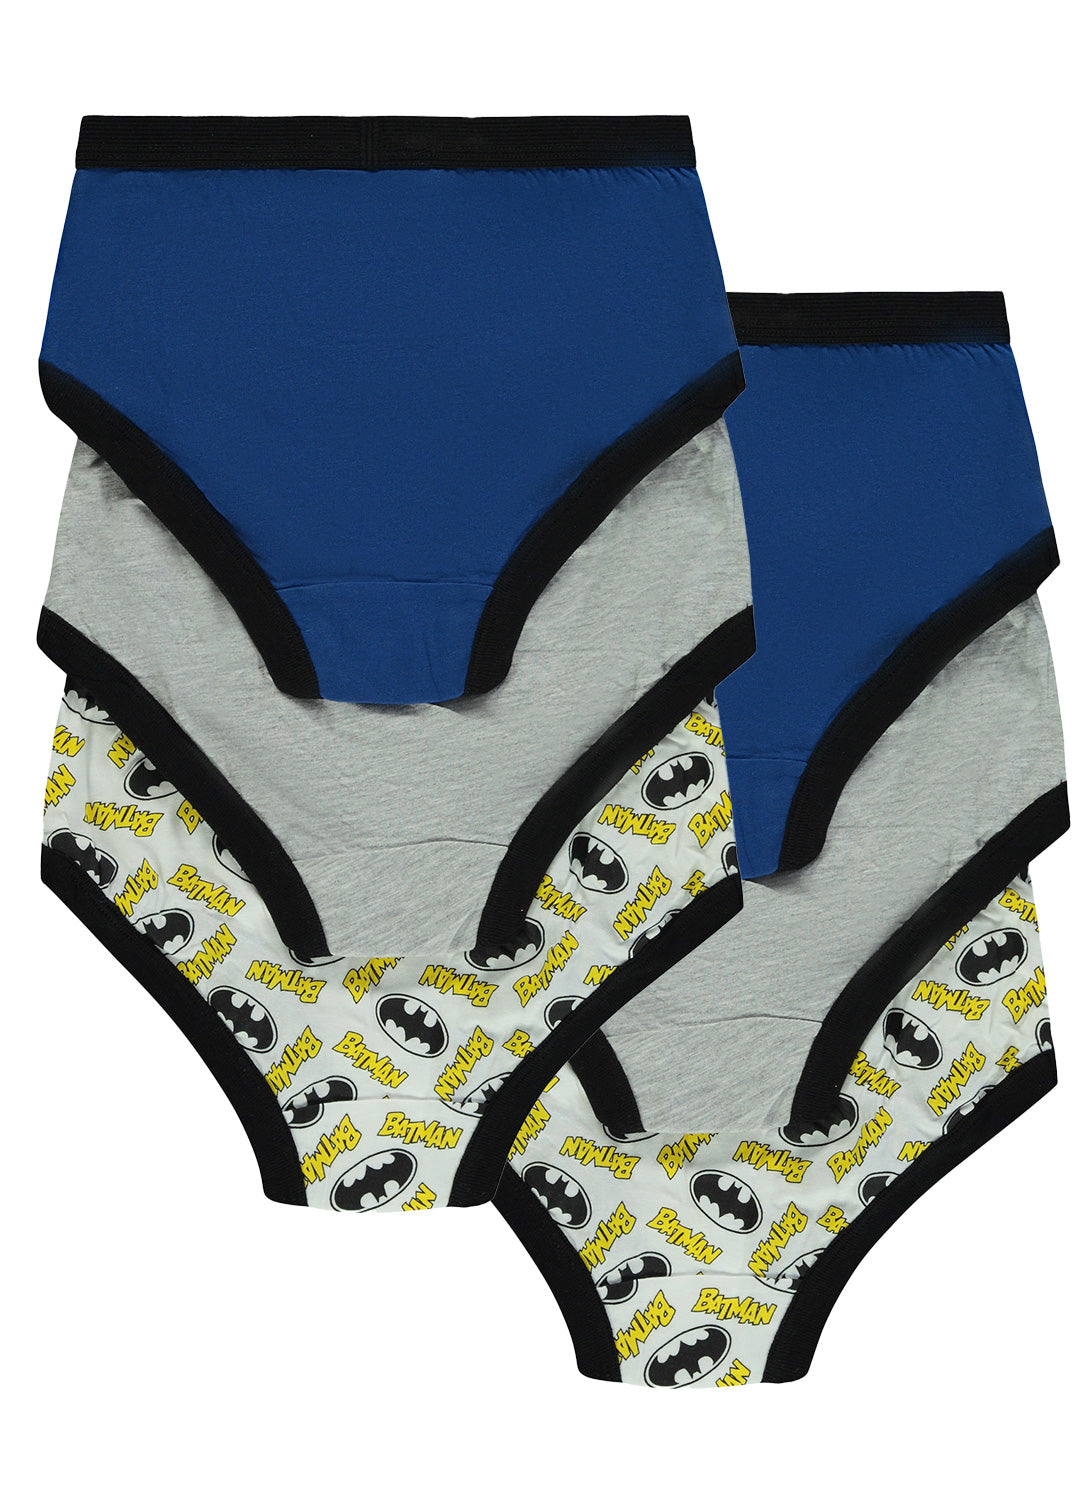 Boys Batman Cotton Underwear - 6 Pack